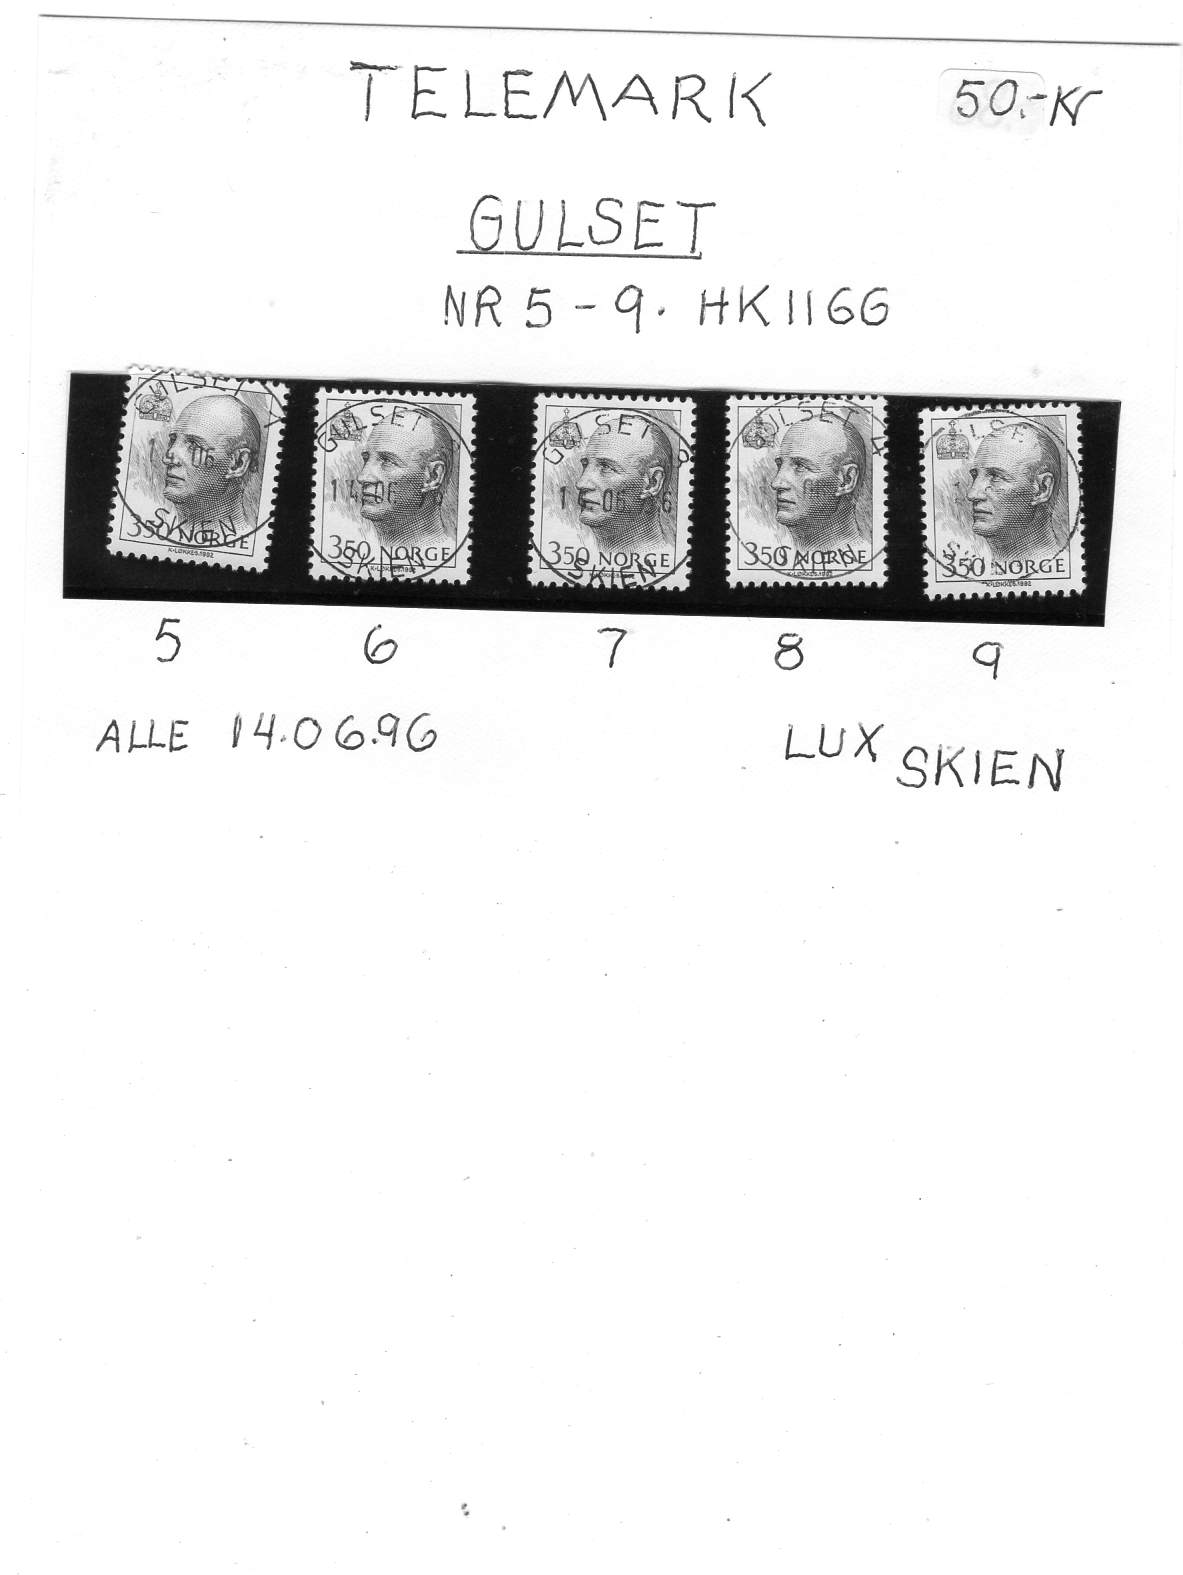 HK 1166 st Gulset 14/06/96 Luke 5,6,7,8,9